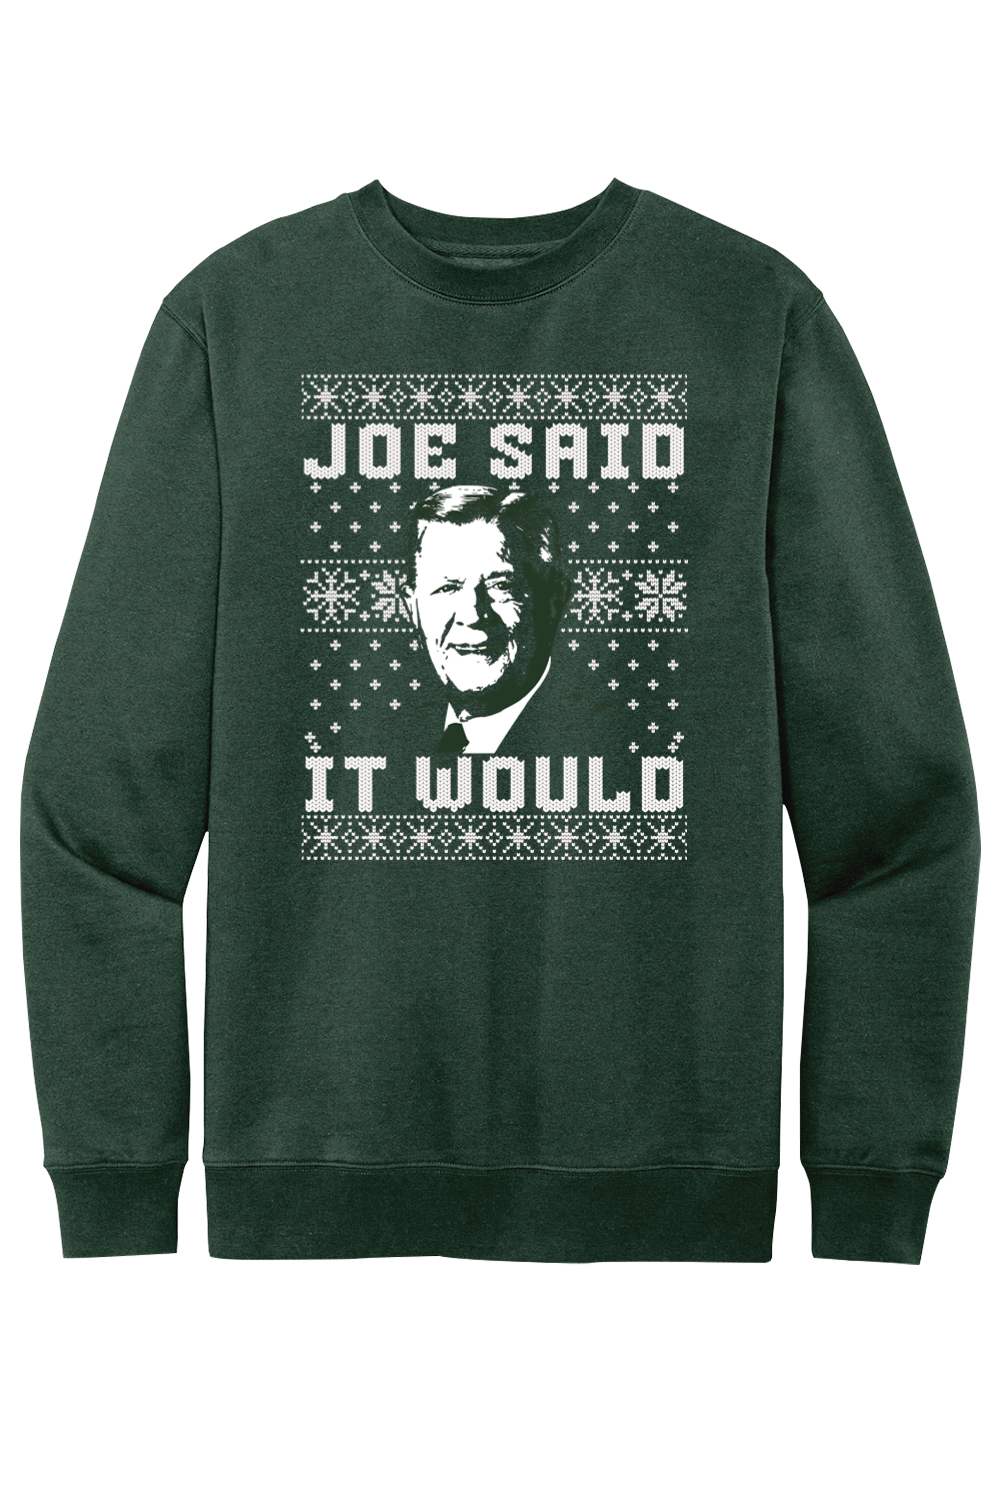 Joe Said it Would - Ugly Christmas Sweate - Fleece Crewneck Sweatshirt - Yinzylvania